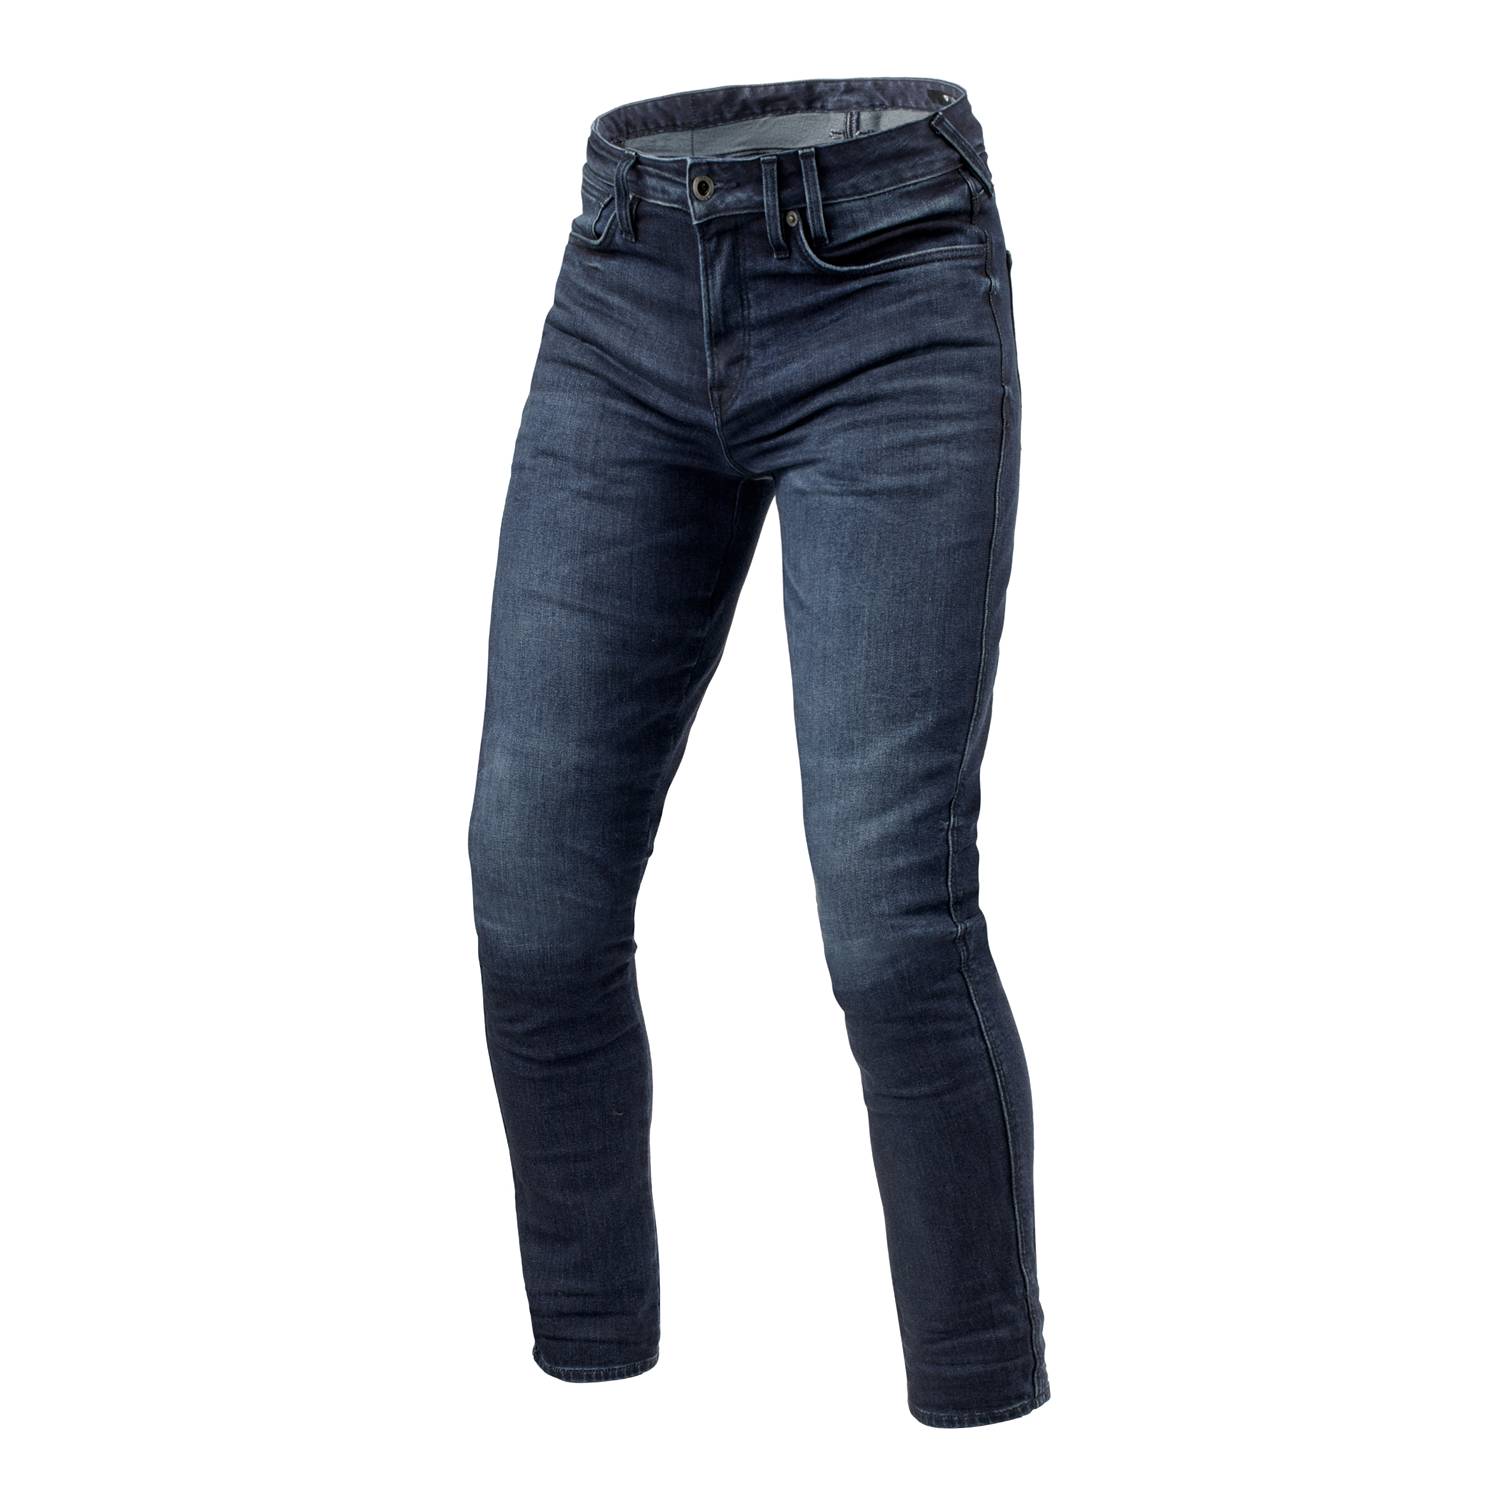 Image of REV'IT! Jeans Carlin SK Dark Blue Used L32 Motorcycle Jeans Size L32/W32 EN